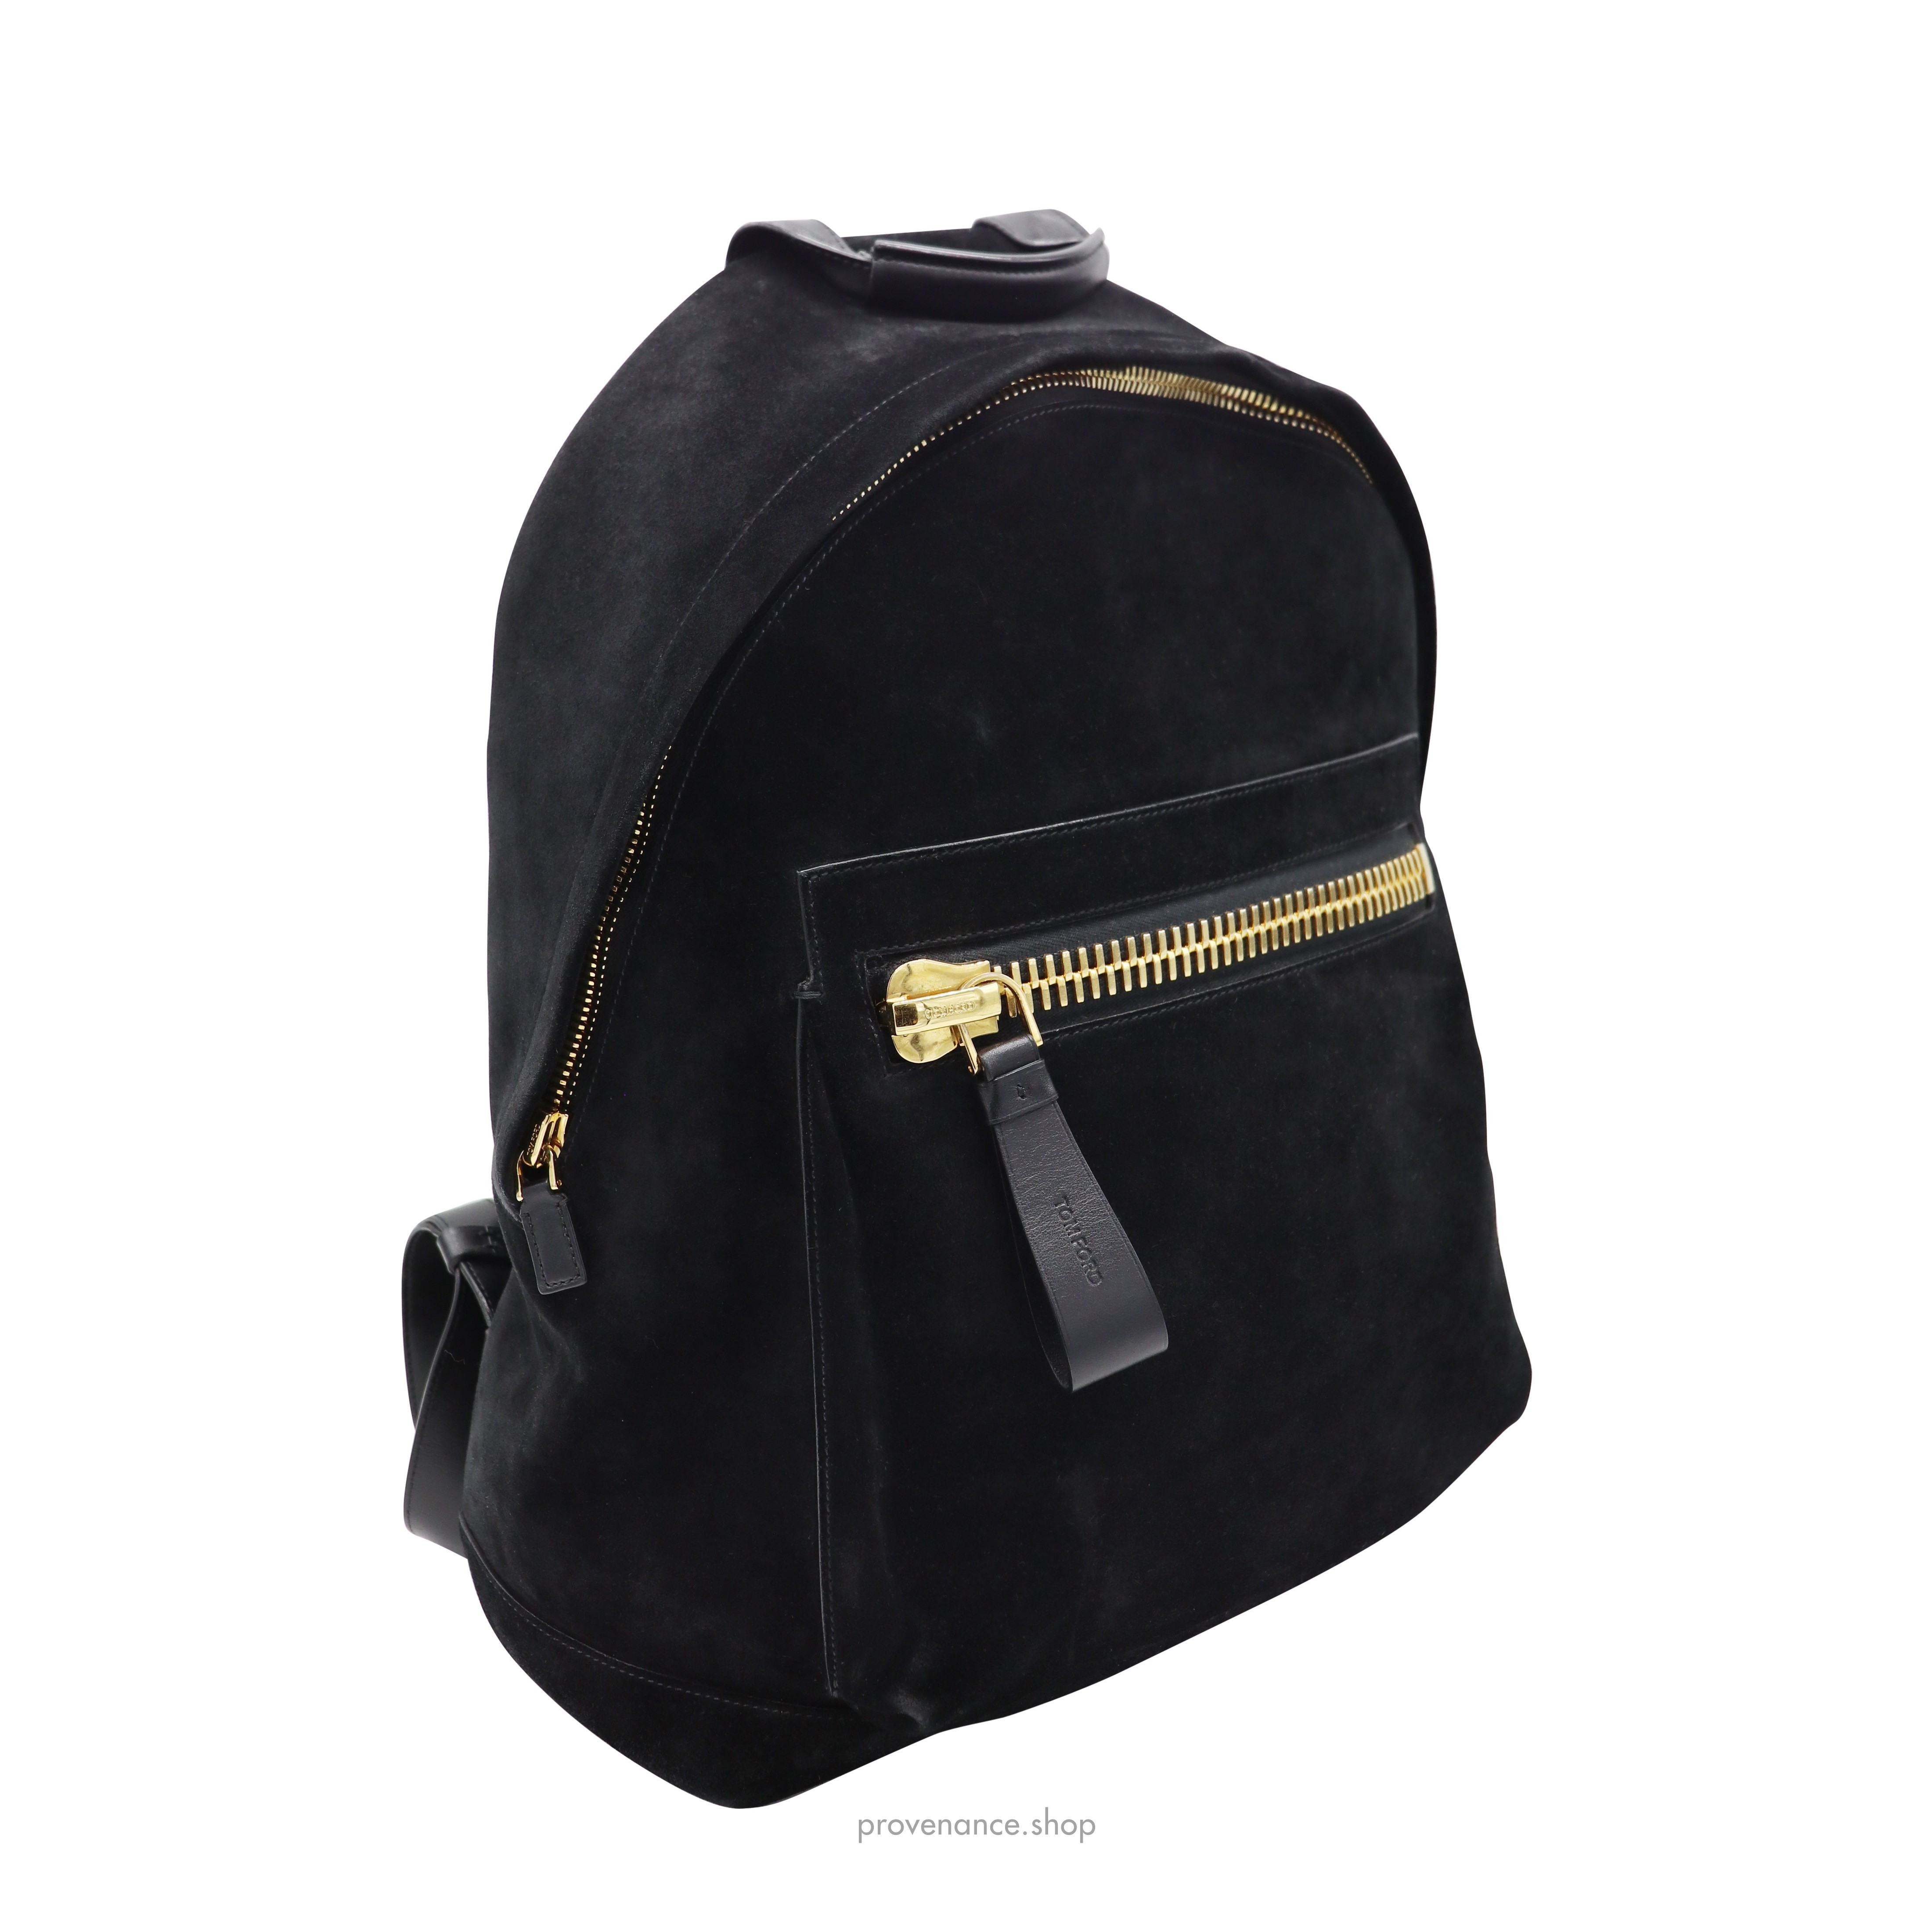 Buckley Backpack Bag - Black Suede - 5